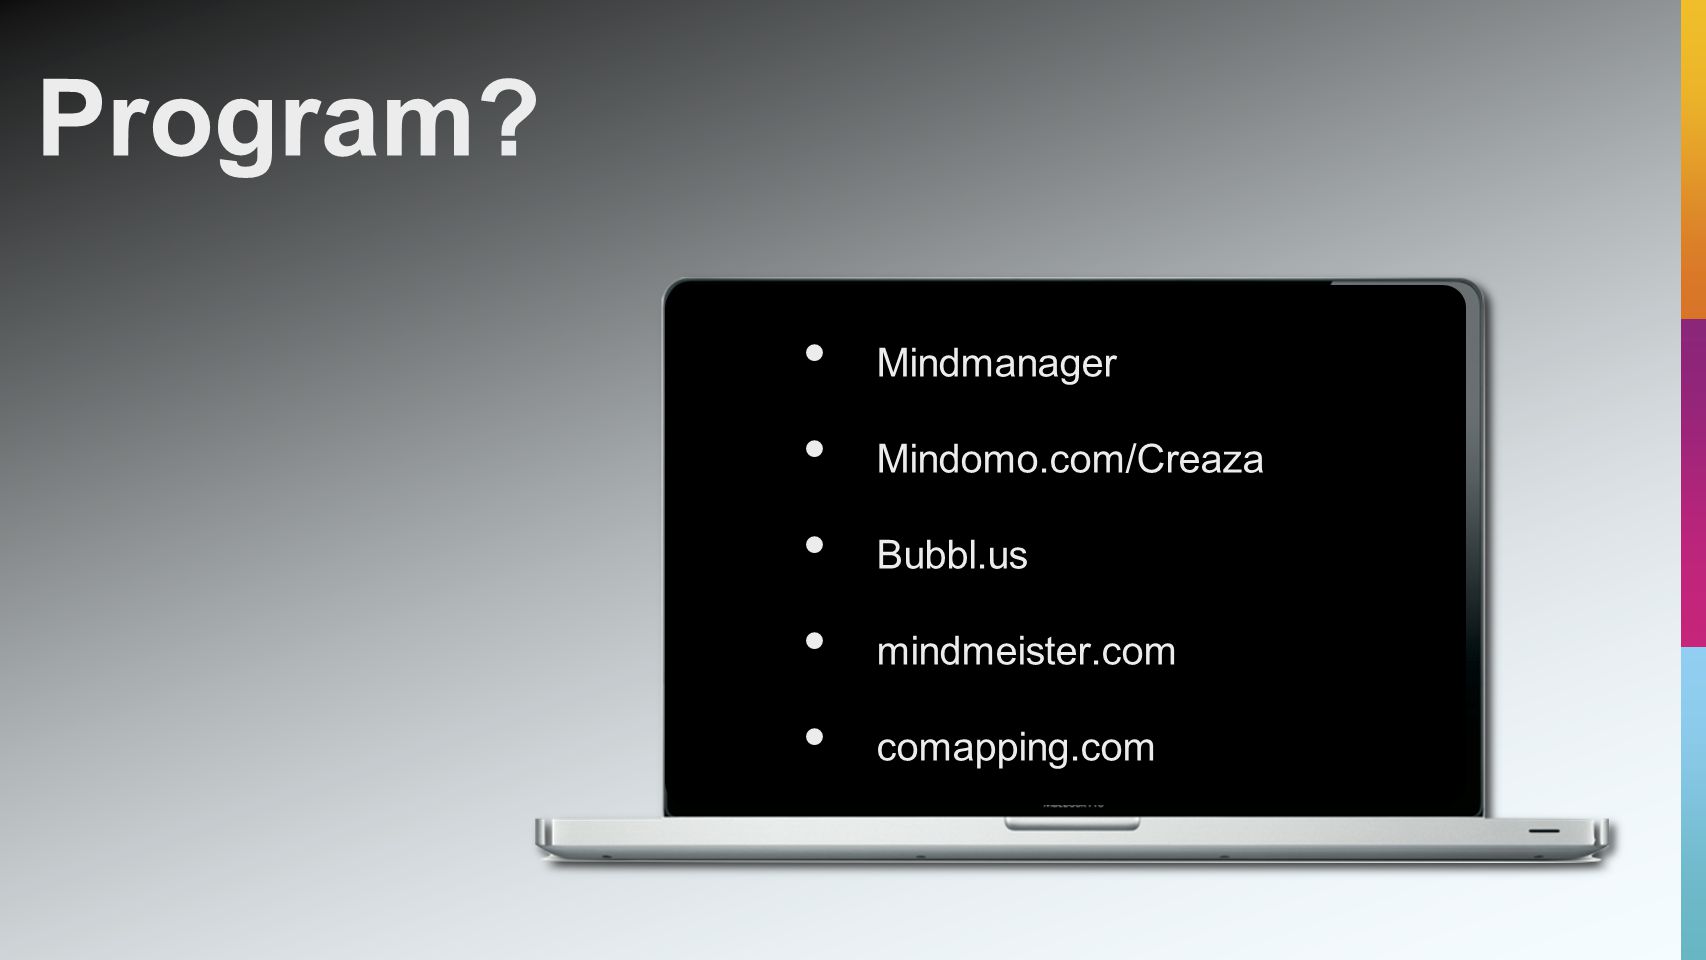 • Mindmanager • Mindomo.com/Creaza • Bubbl.us • mindmeister.com • comapping.com Program